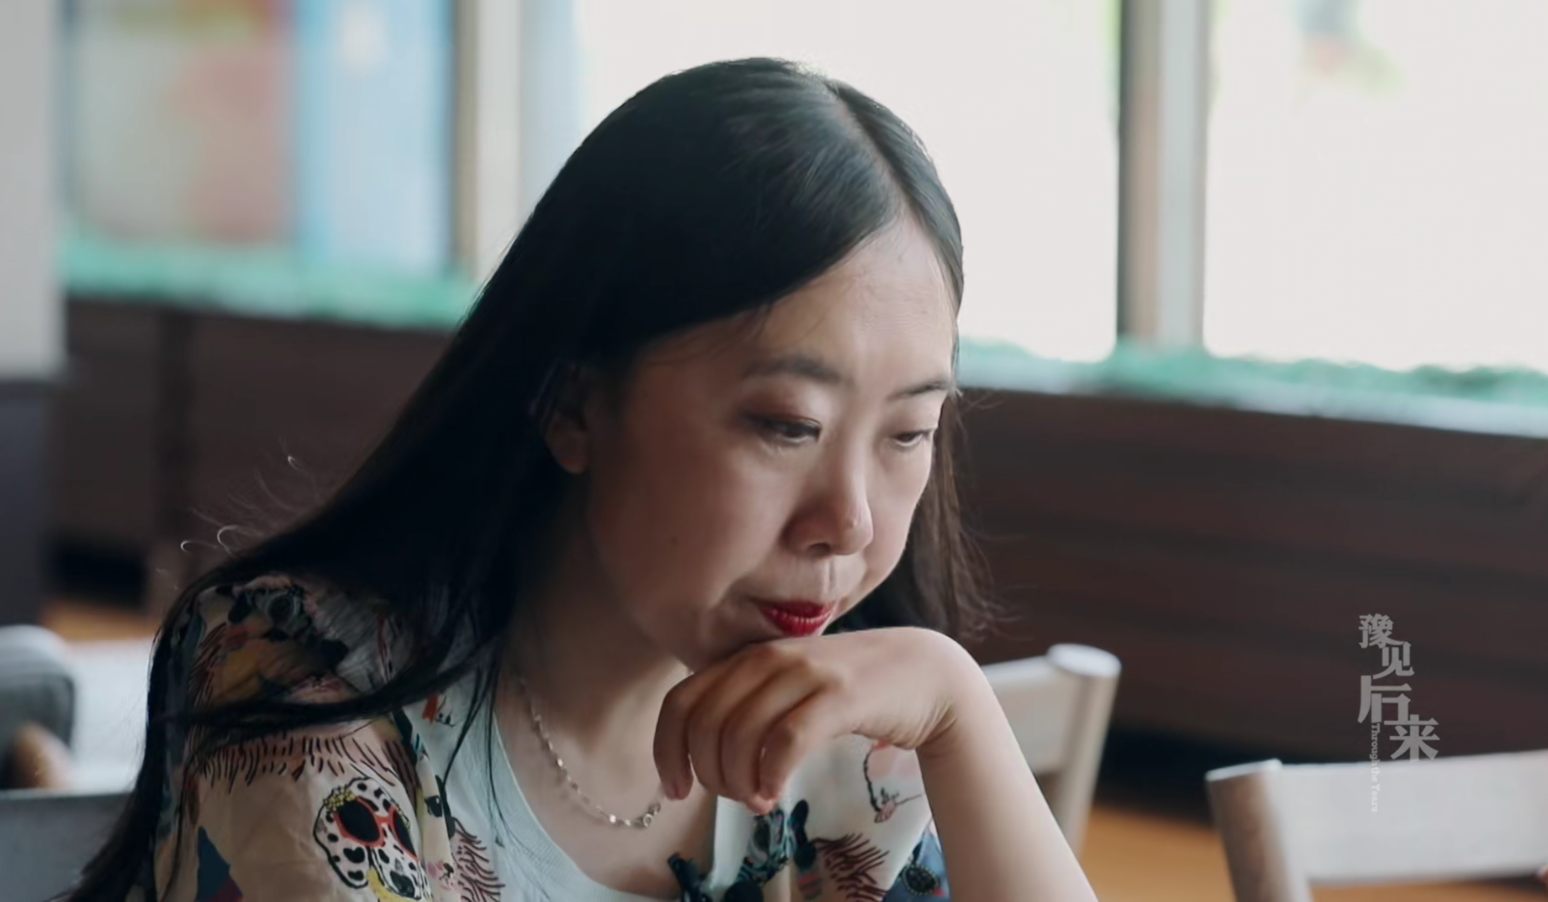 41岁杨丽娟现状:月薪2000,至今不想恋爱,对刘德华仍有一丝埋怨